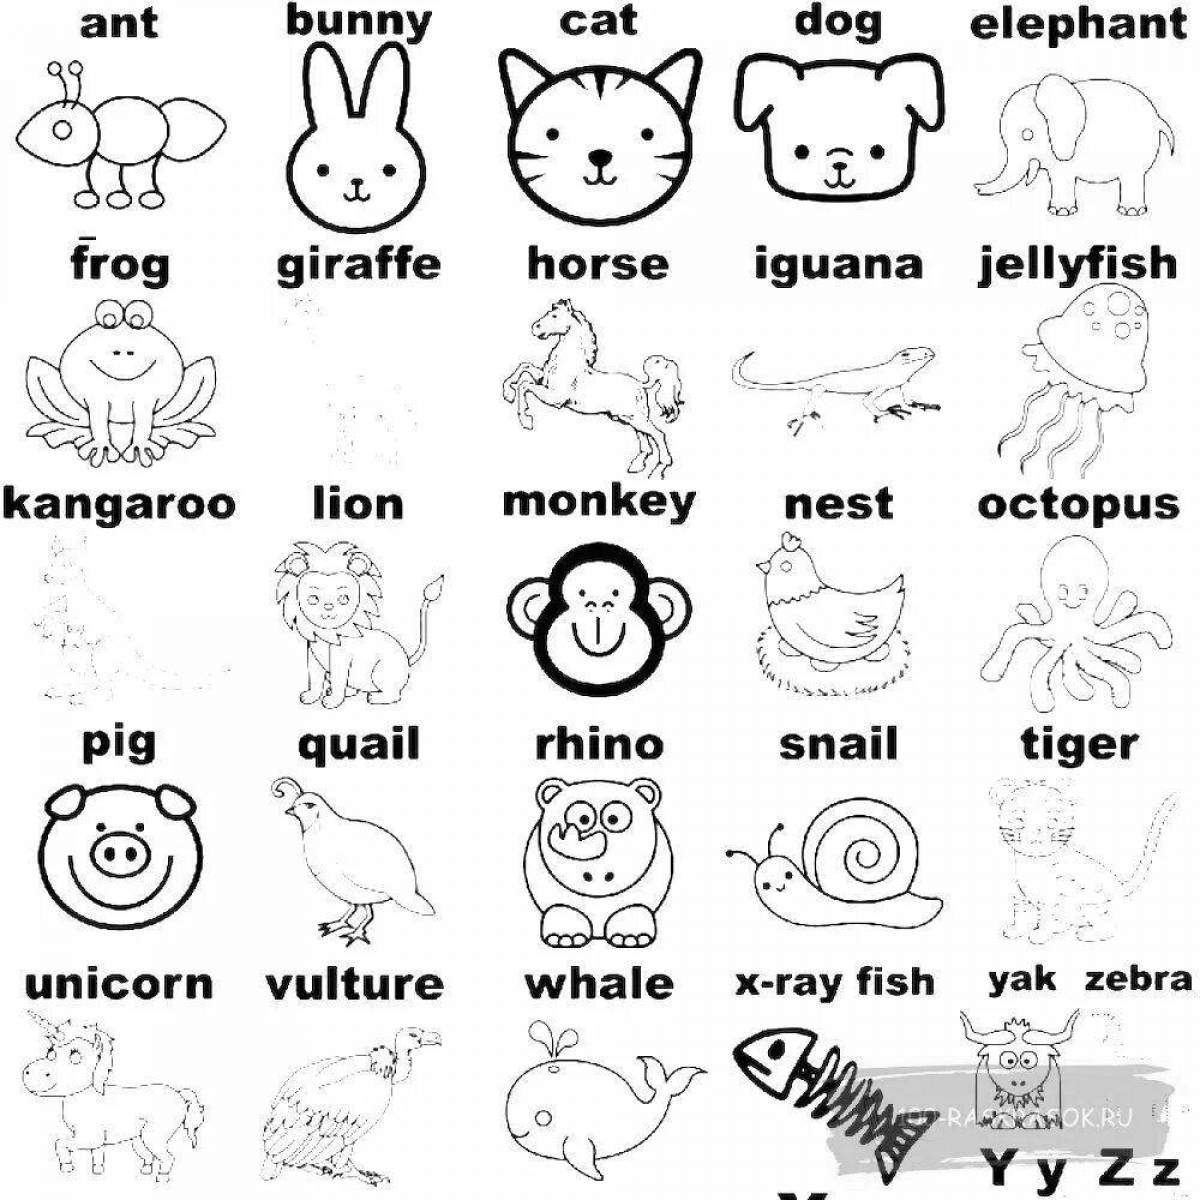 Fun coloring language for kids